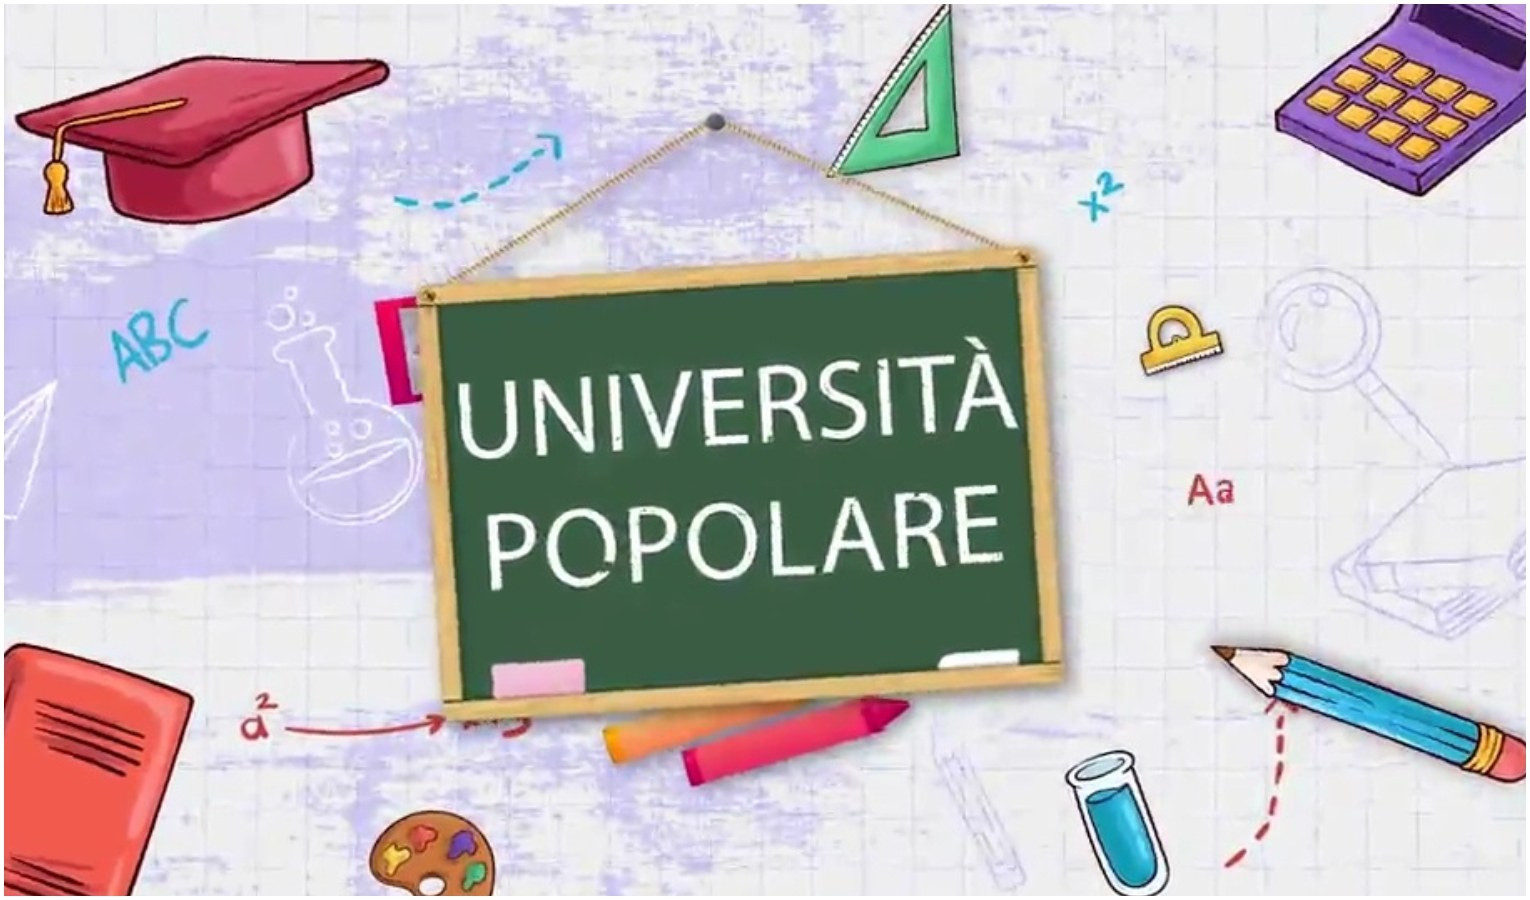 Università popolare - L'articolo davanti alle parole straniere